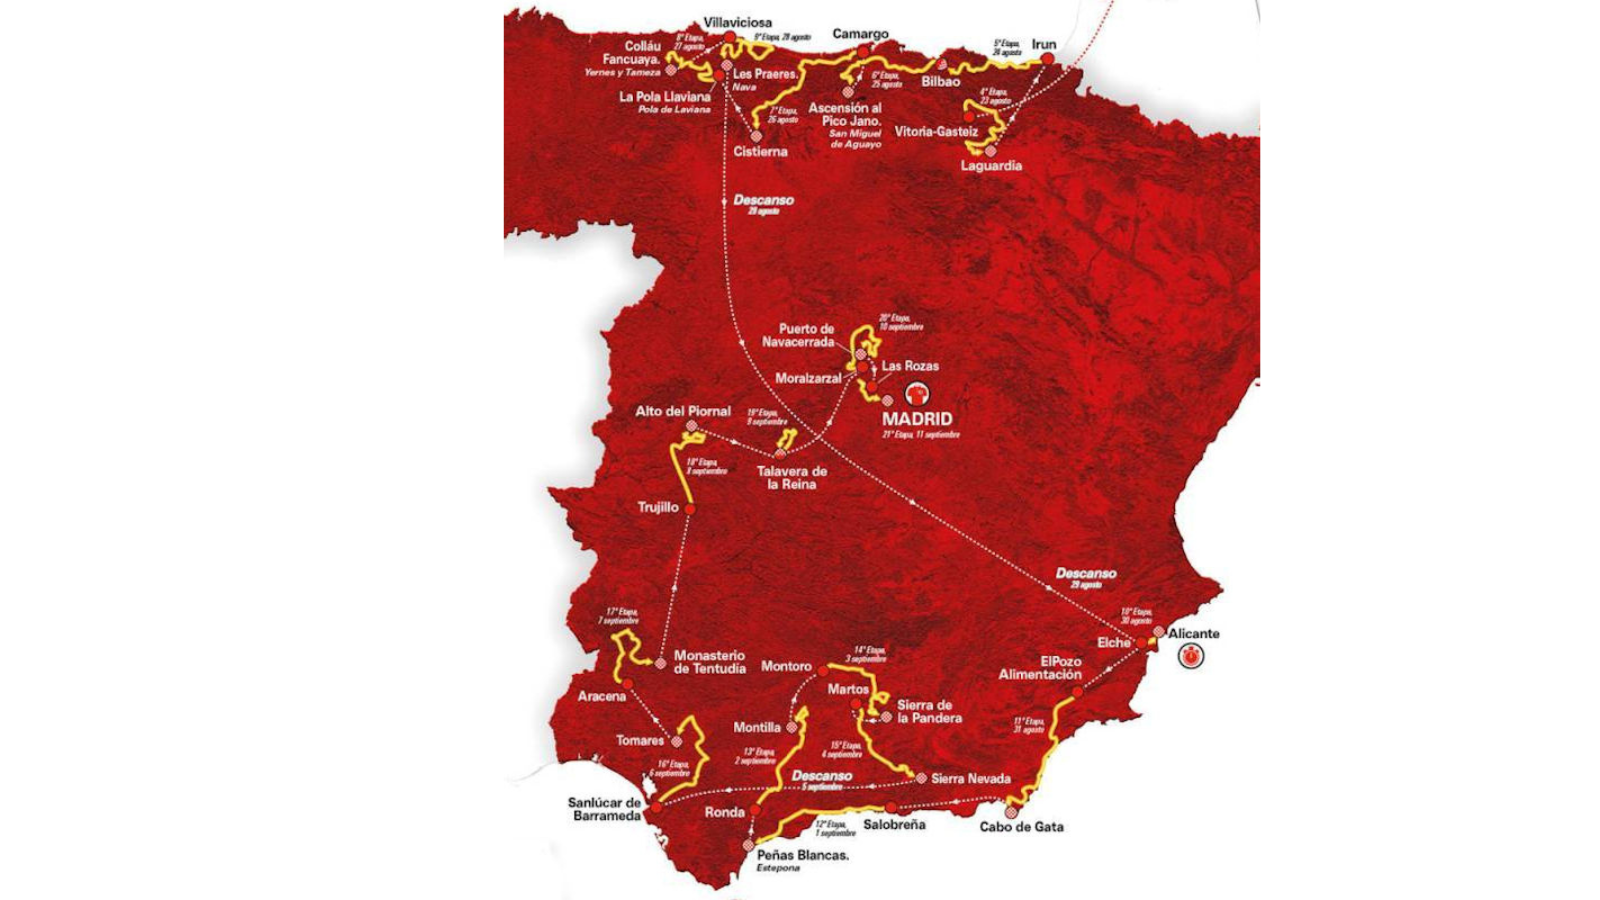 La Vuelta 2022 starts on 19th August 2022